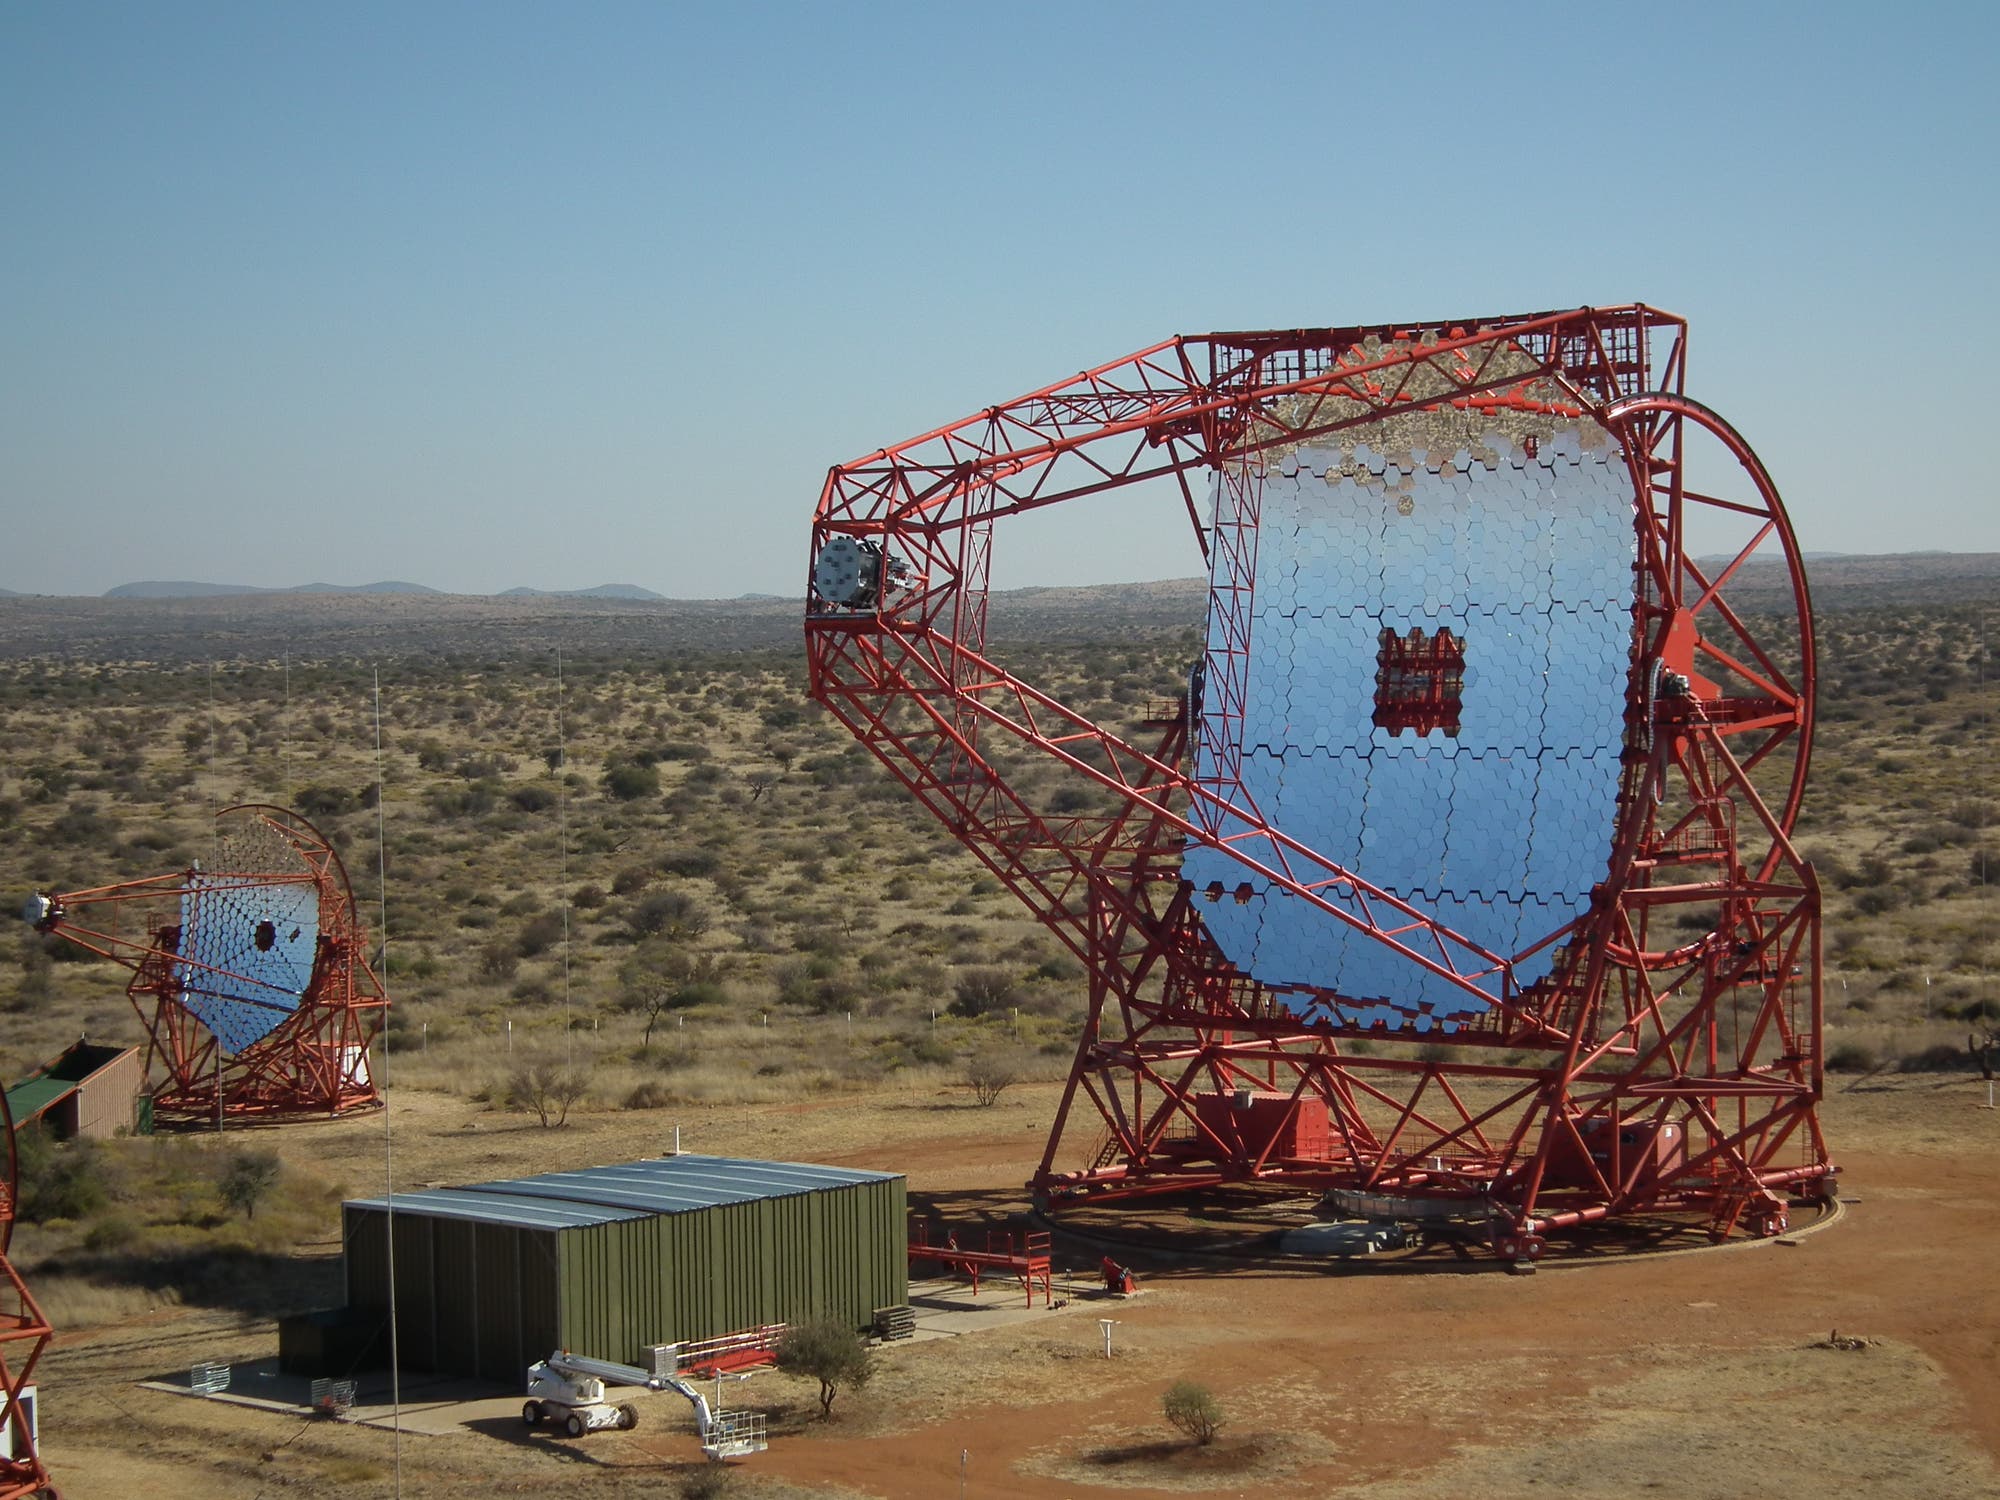 Das H.E.S.S. II Teleskop in Namibia